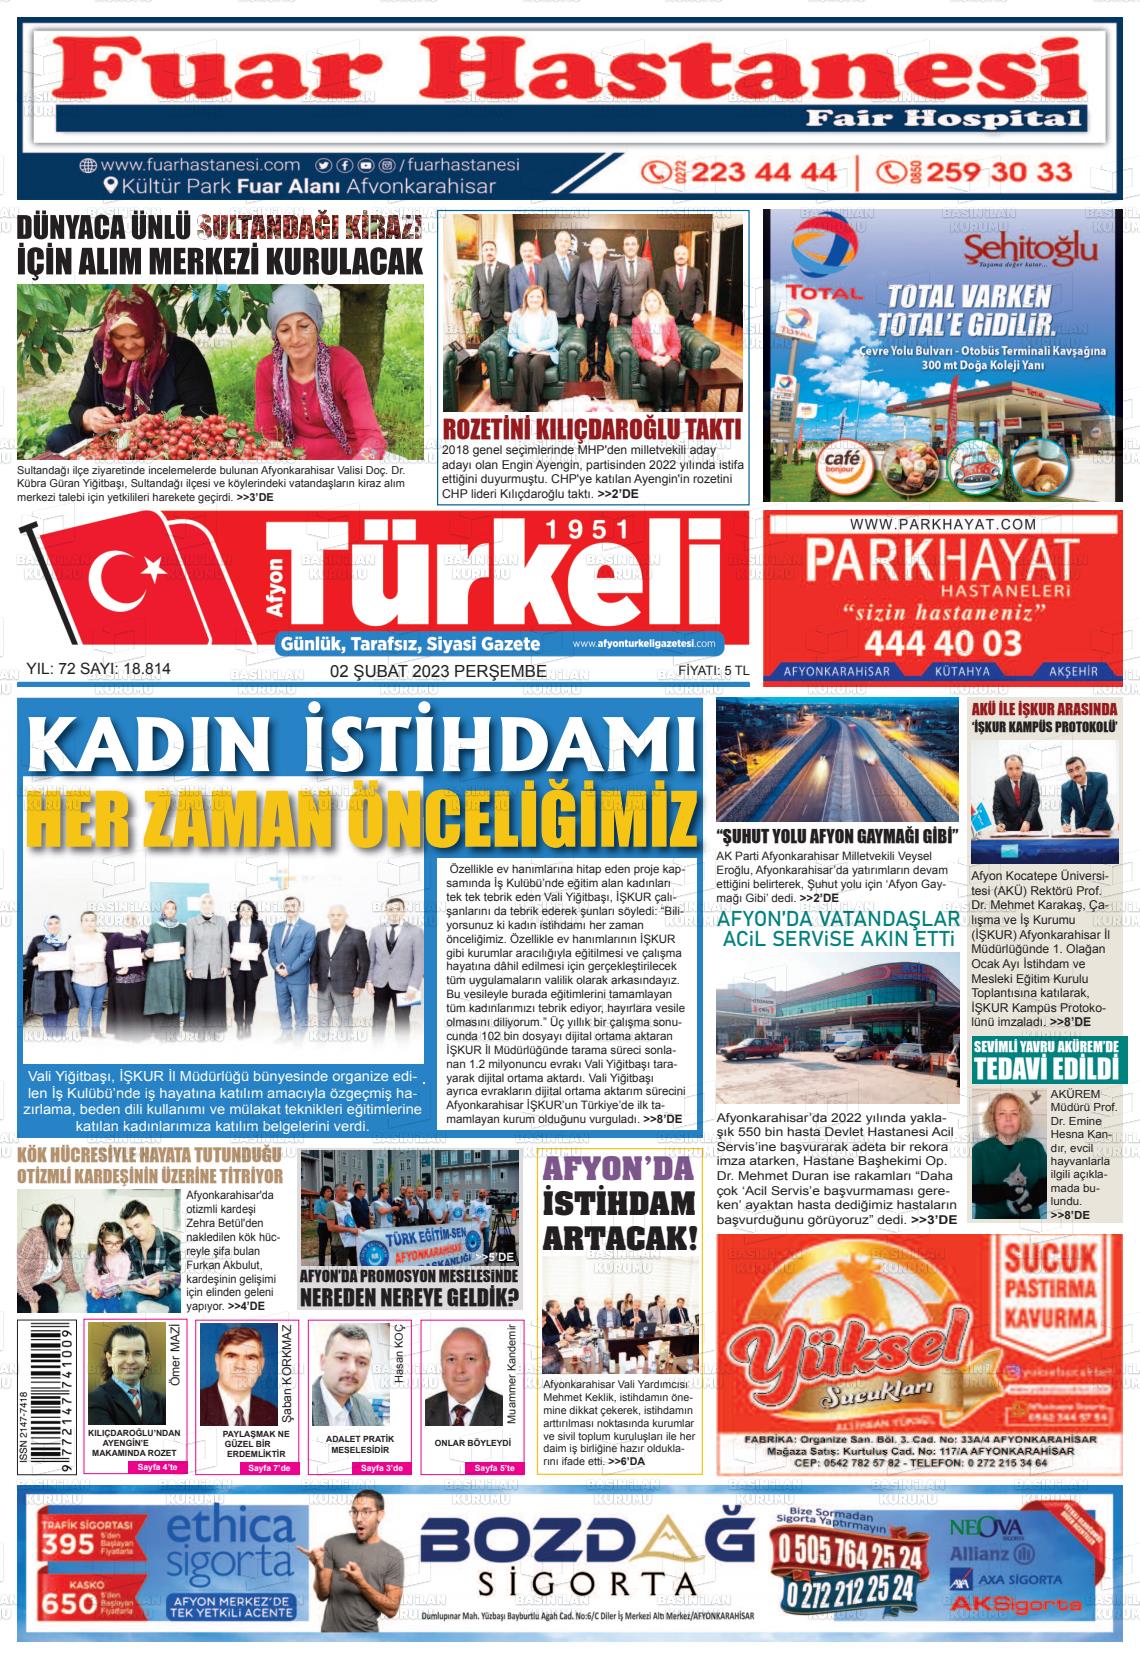 02 Şubat 2023 Afyon Türkeli Gazete Manşeti